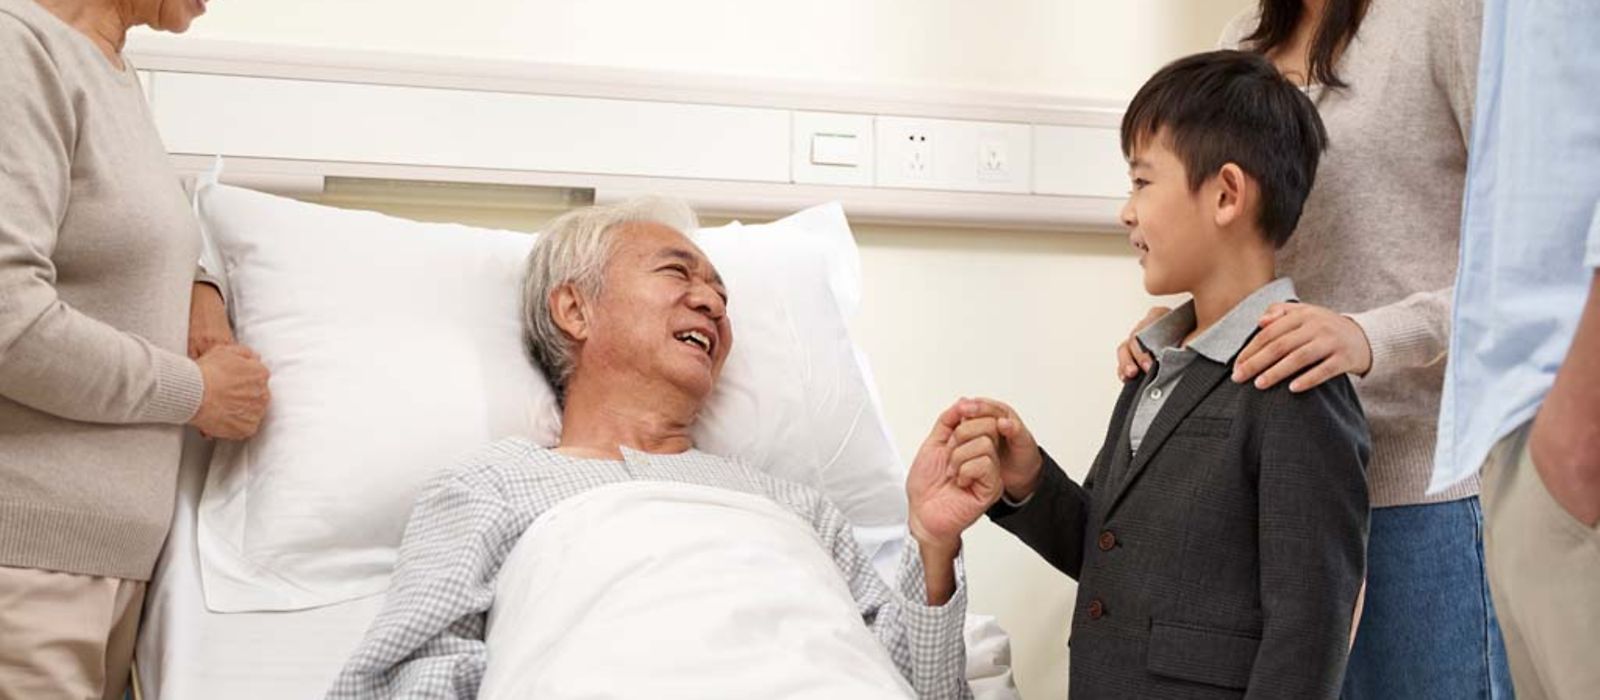 Ein Senior im Krankenhausbett hat Besuch von seiner Familie.